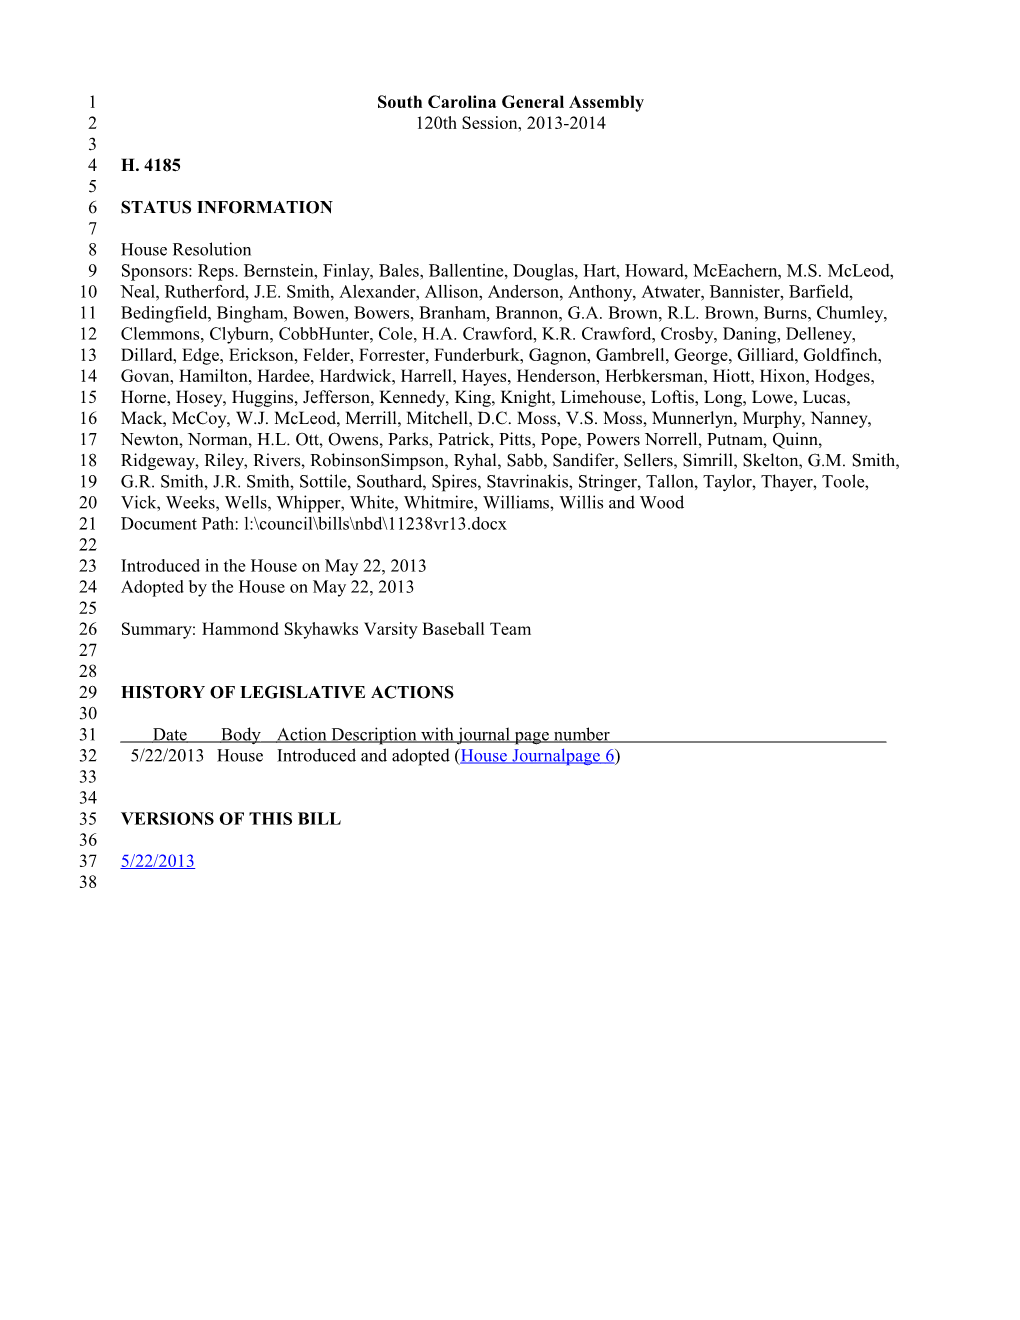 2013-2014 Bill 4185: Hammond Skyhawks Varsity Baseball Team - South Carolina Legislature Online